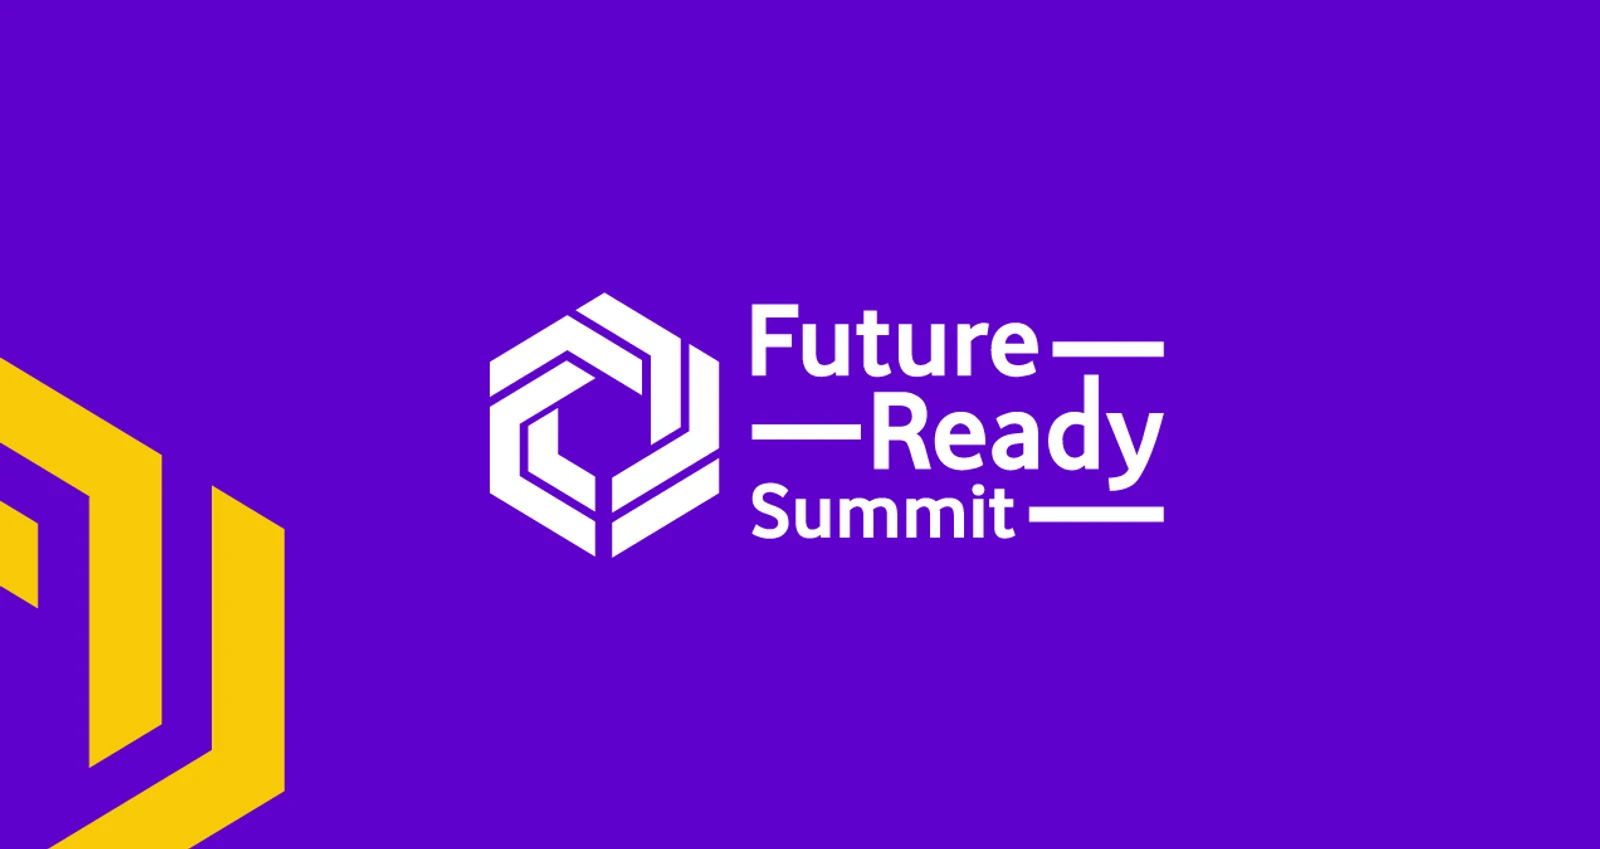 Future Ready Summit